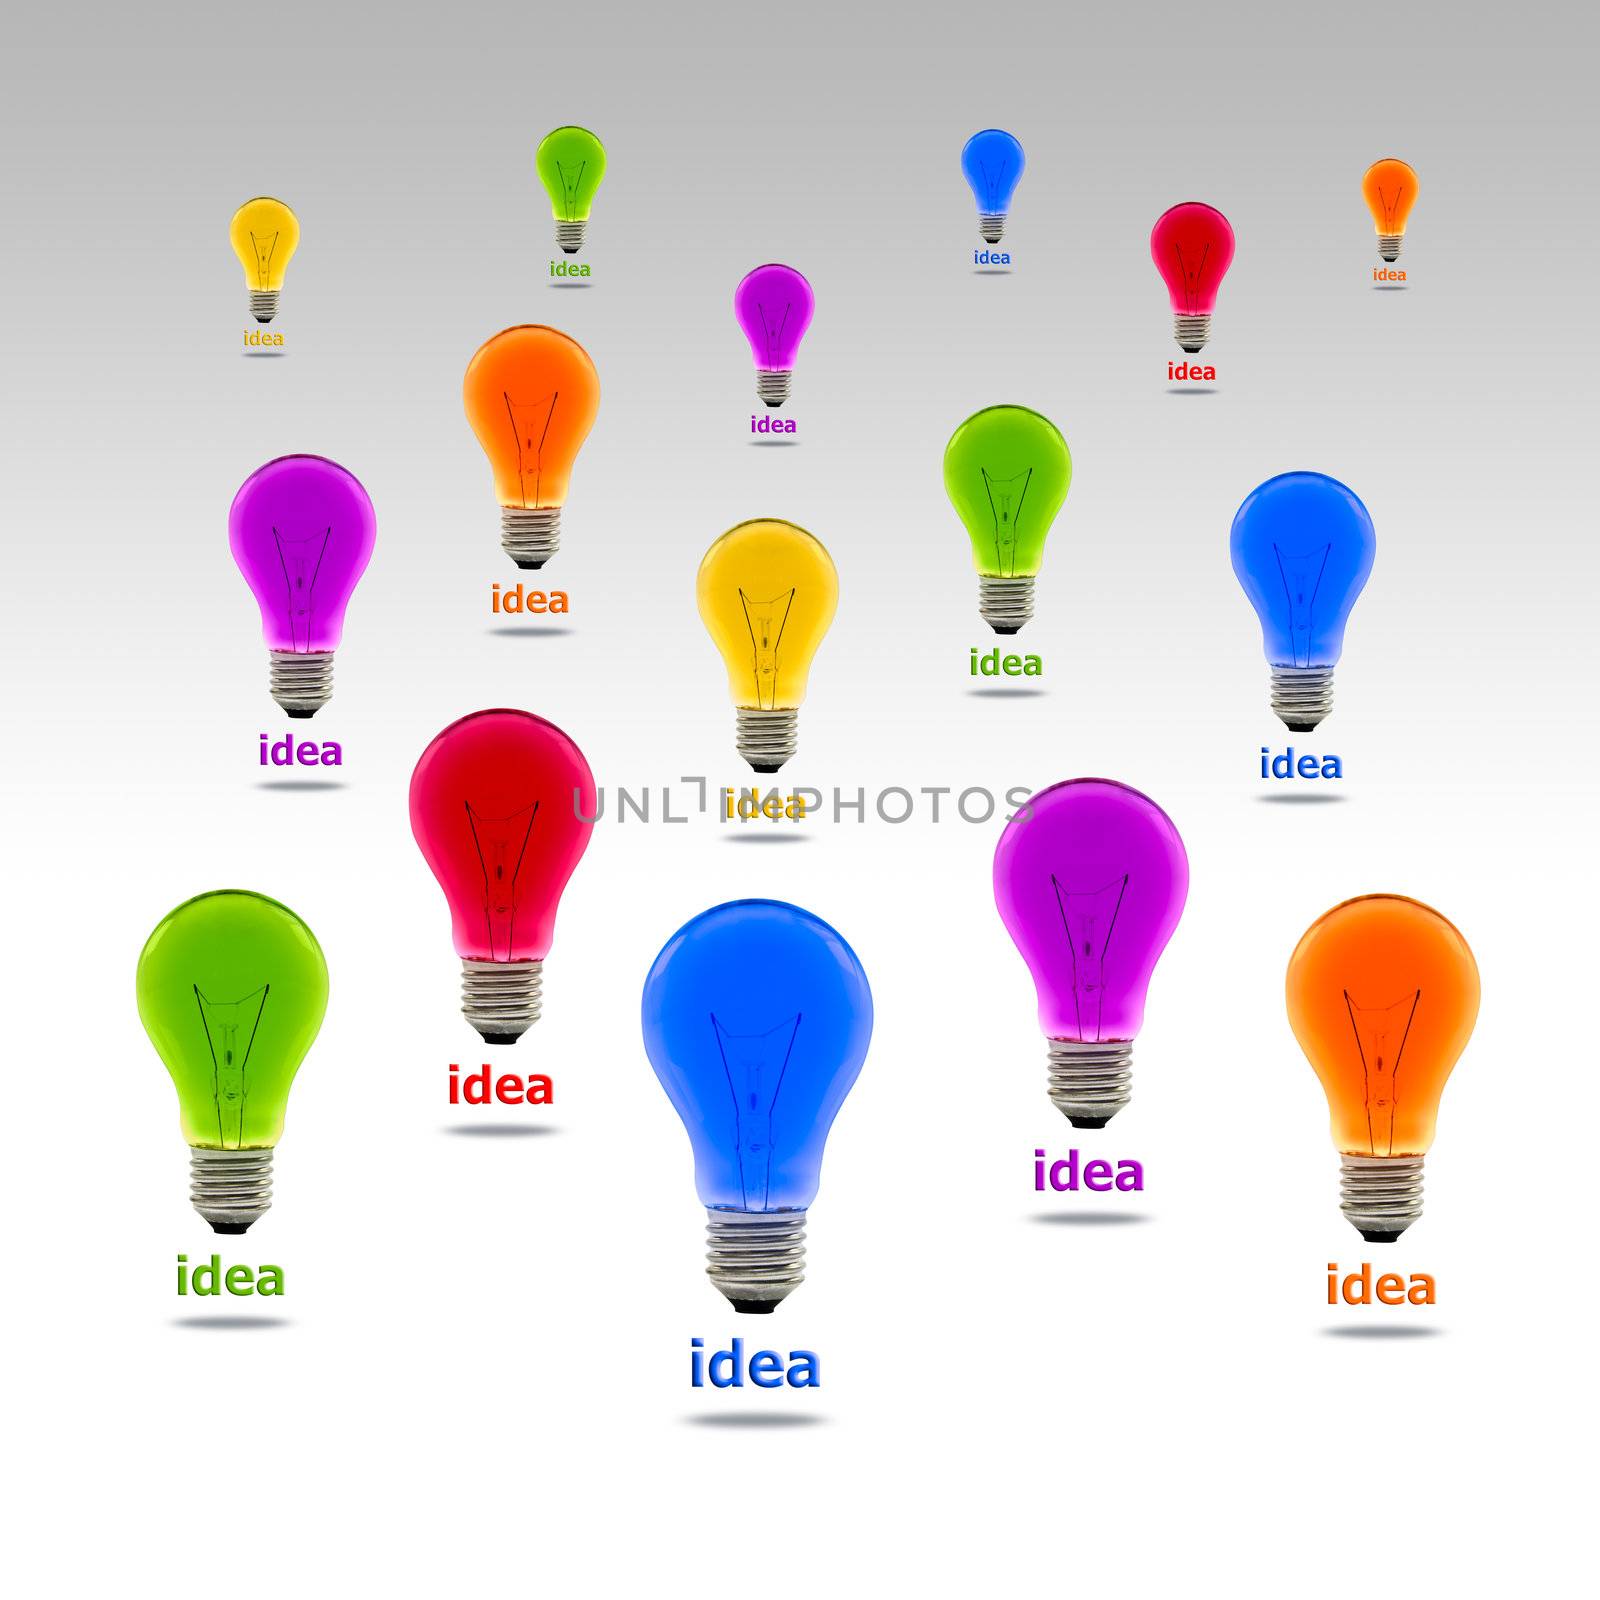 colorful idea light bulb